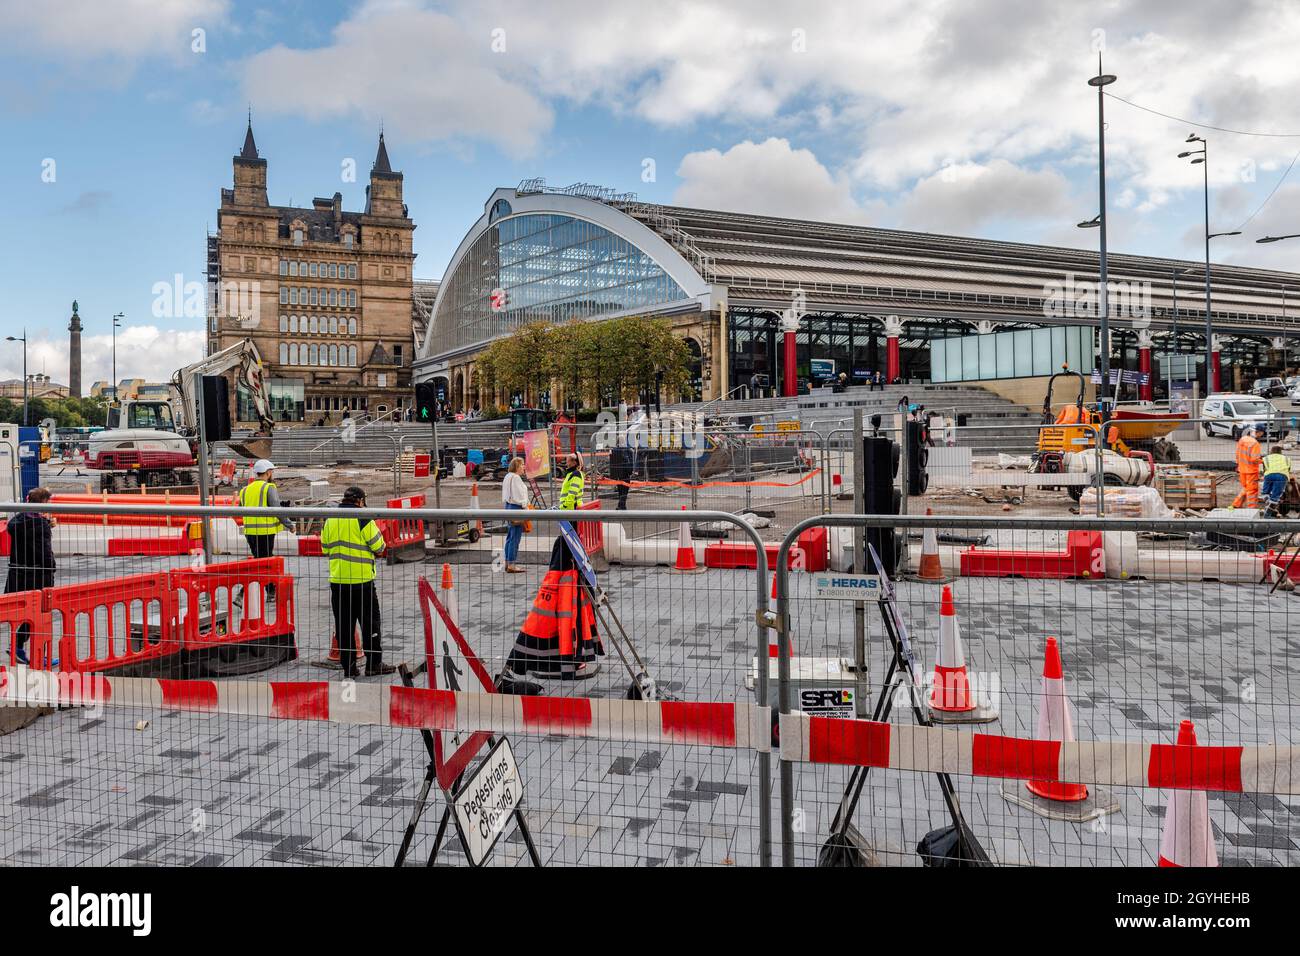 Estación de tren Liverpool Lime Street con obras viales en curso, Liverpool, Merseyside, Reino Unido. Foto de stock